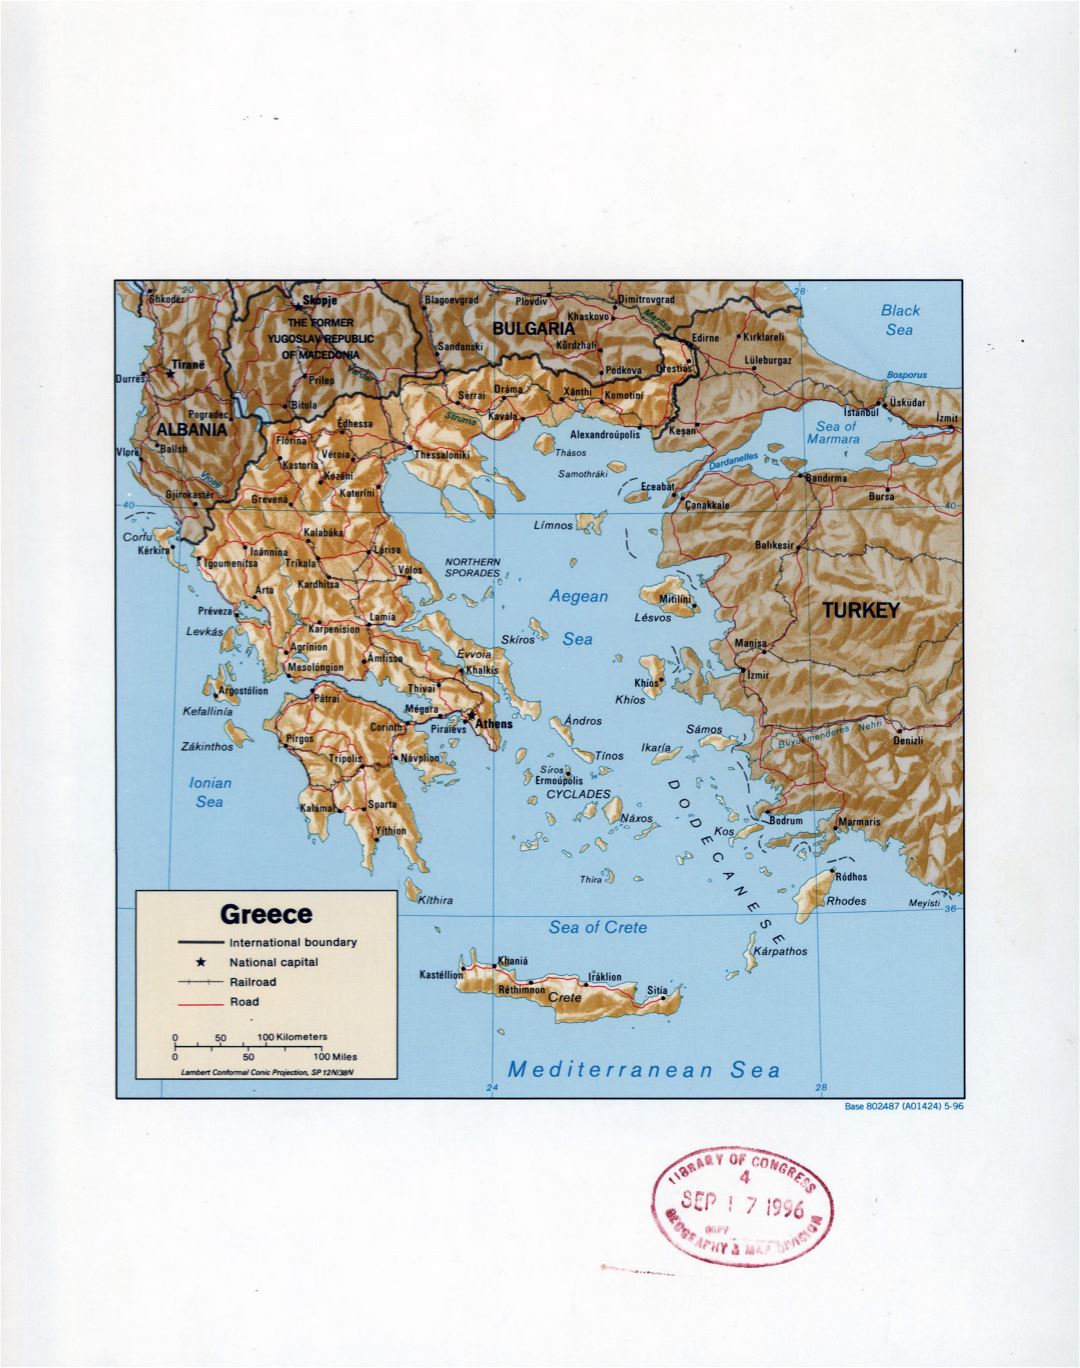 Большая детальная политическая карта Греции с рельефом, пометками дорог, железных дорог и крупных городов - 1996